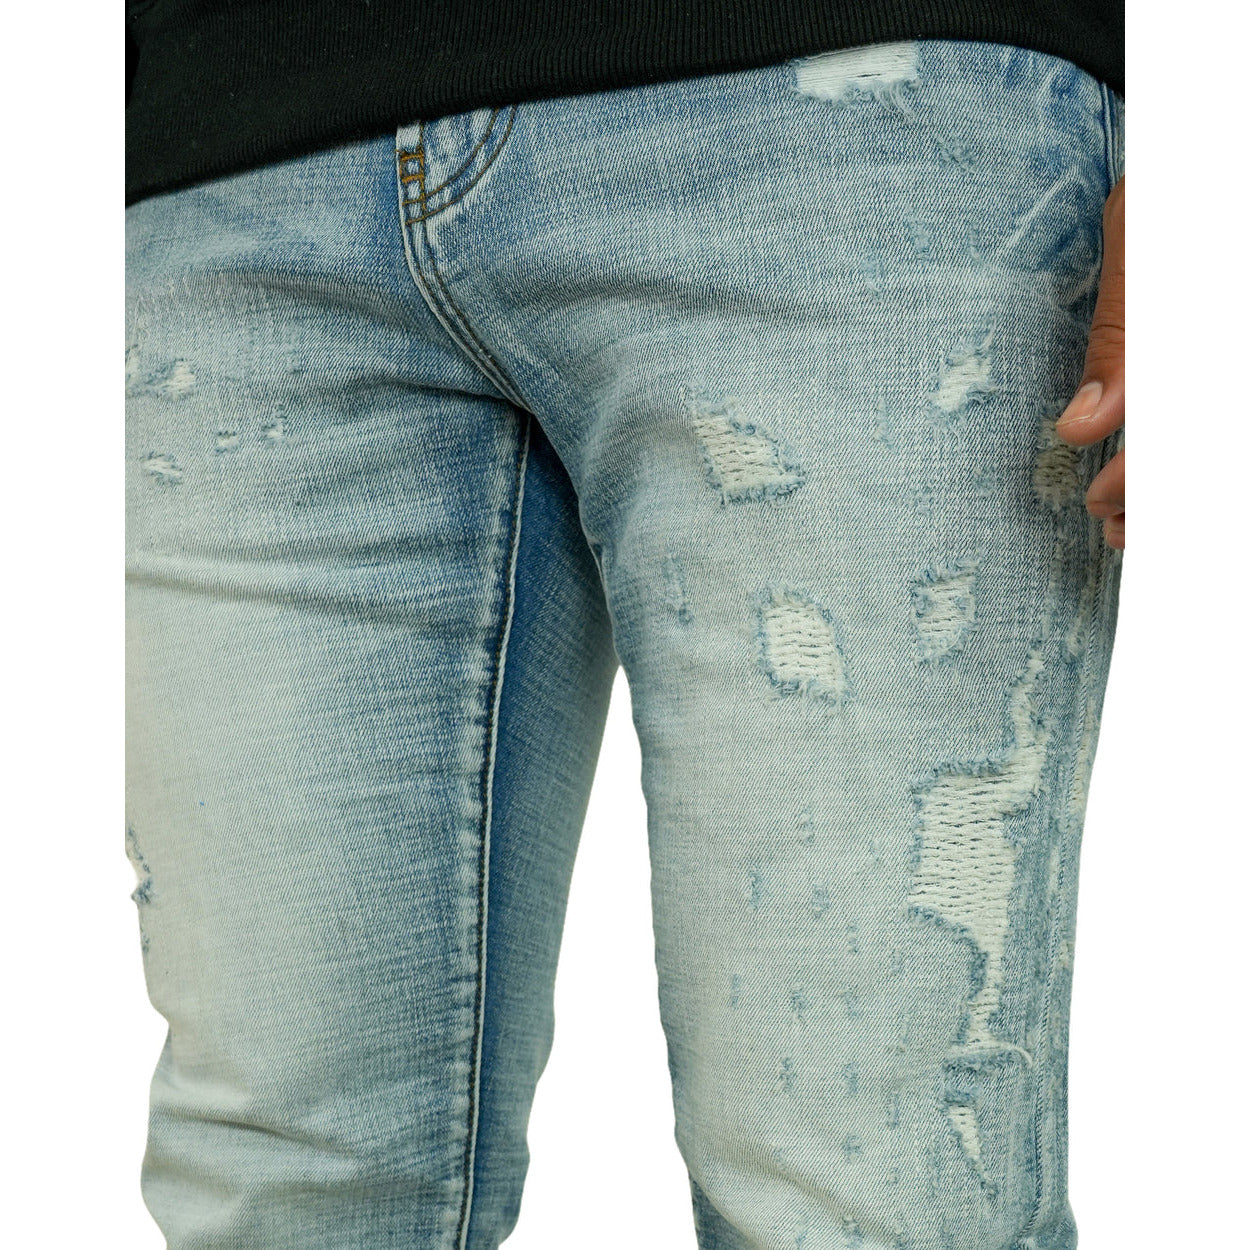 PREME Blue Indigo Ripped Jeans (PR-WB-1212)